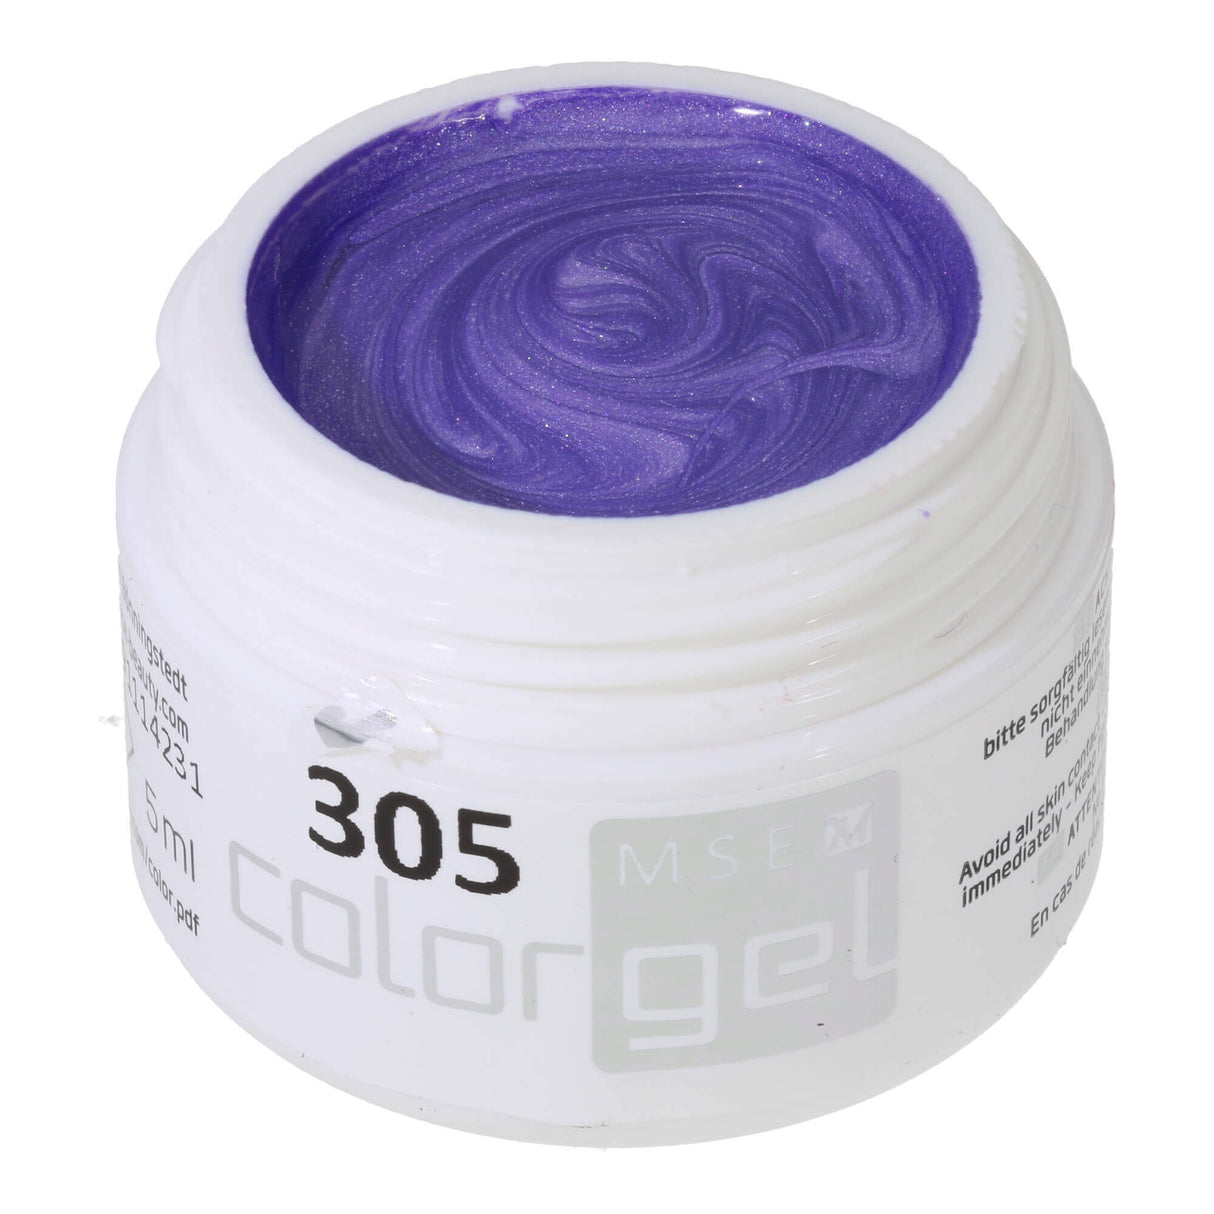 #305 Premium-EFFEKT Color Gel 5ml Màu hoa cà hơi xanh với hiệu ứng màu xanh bạc